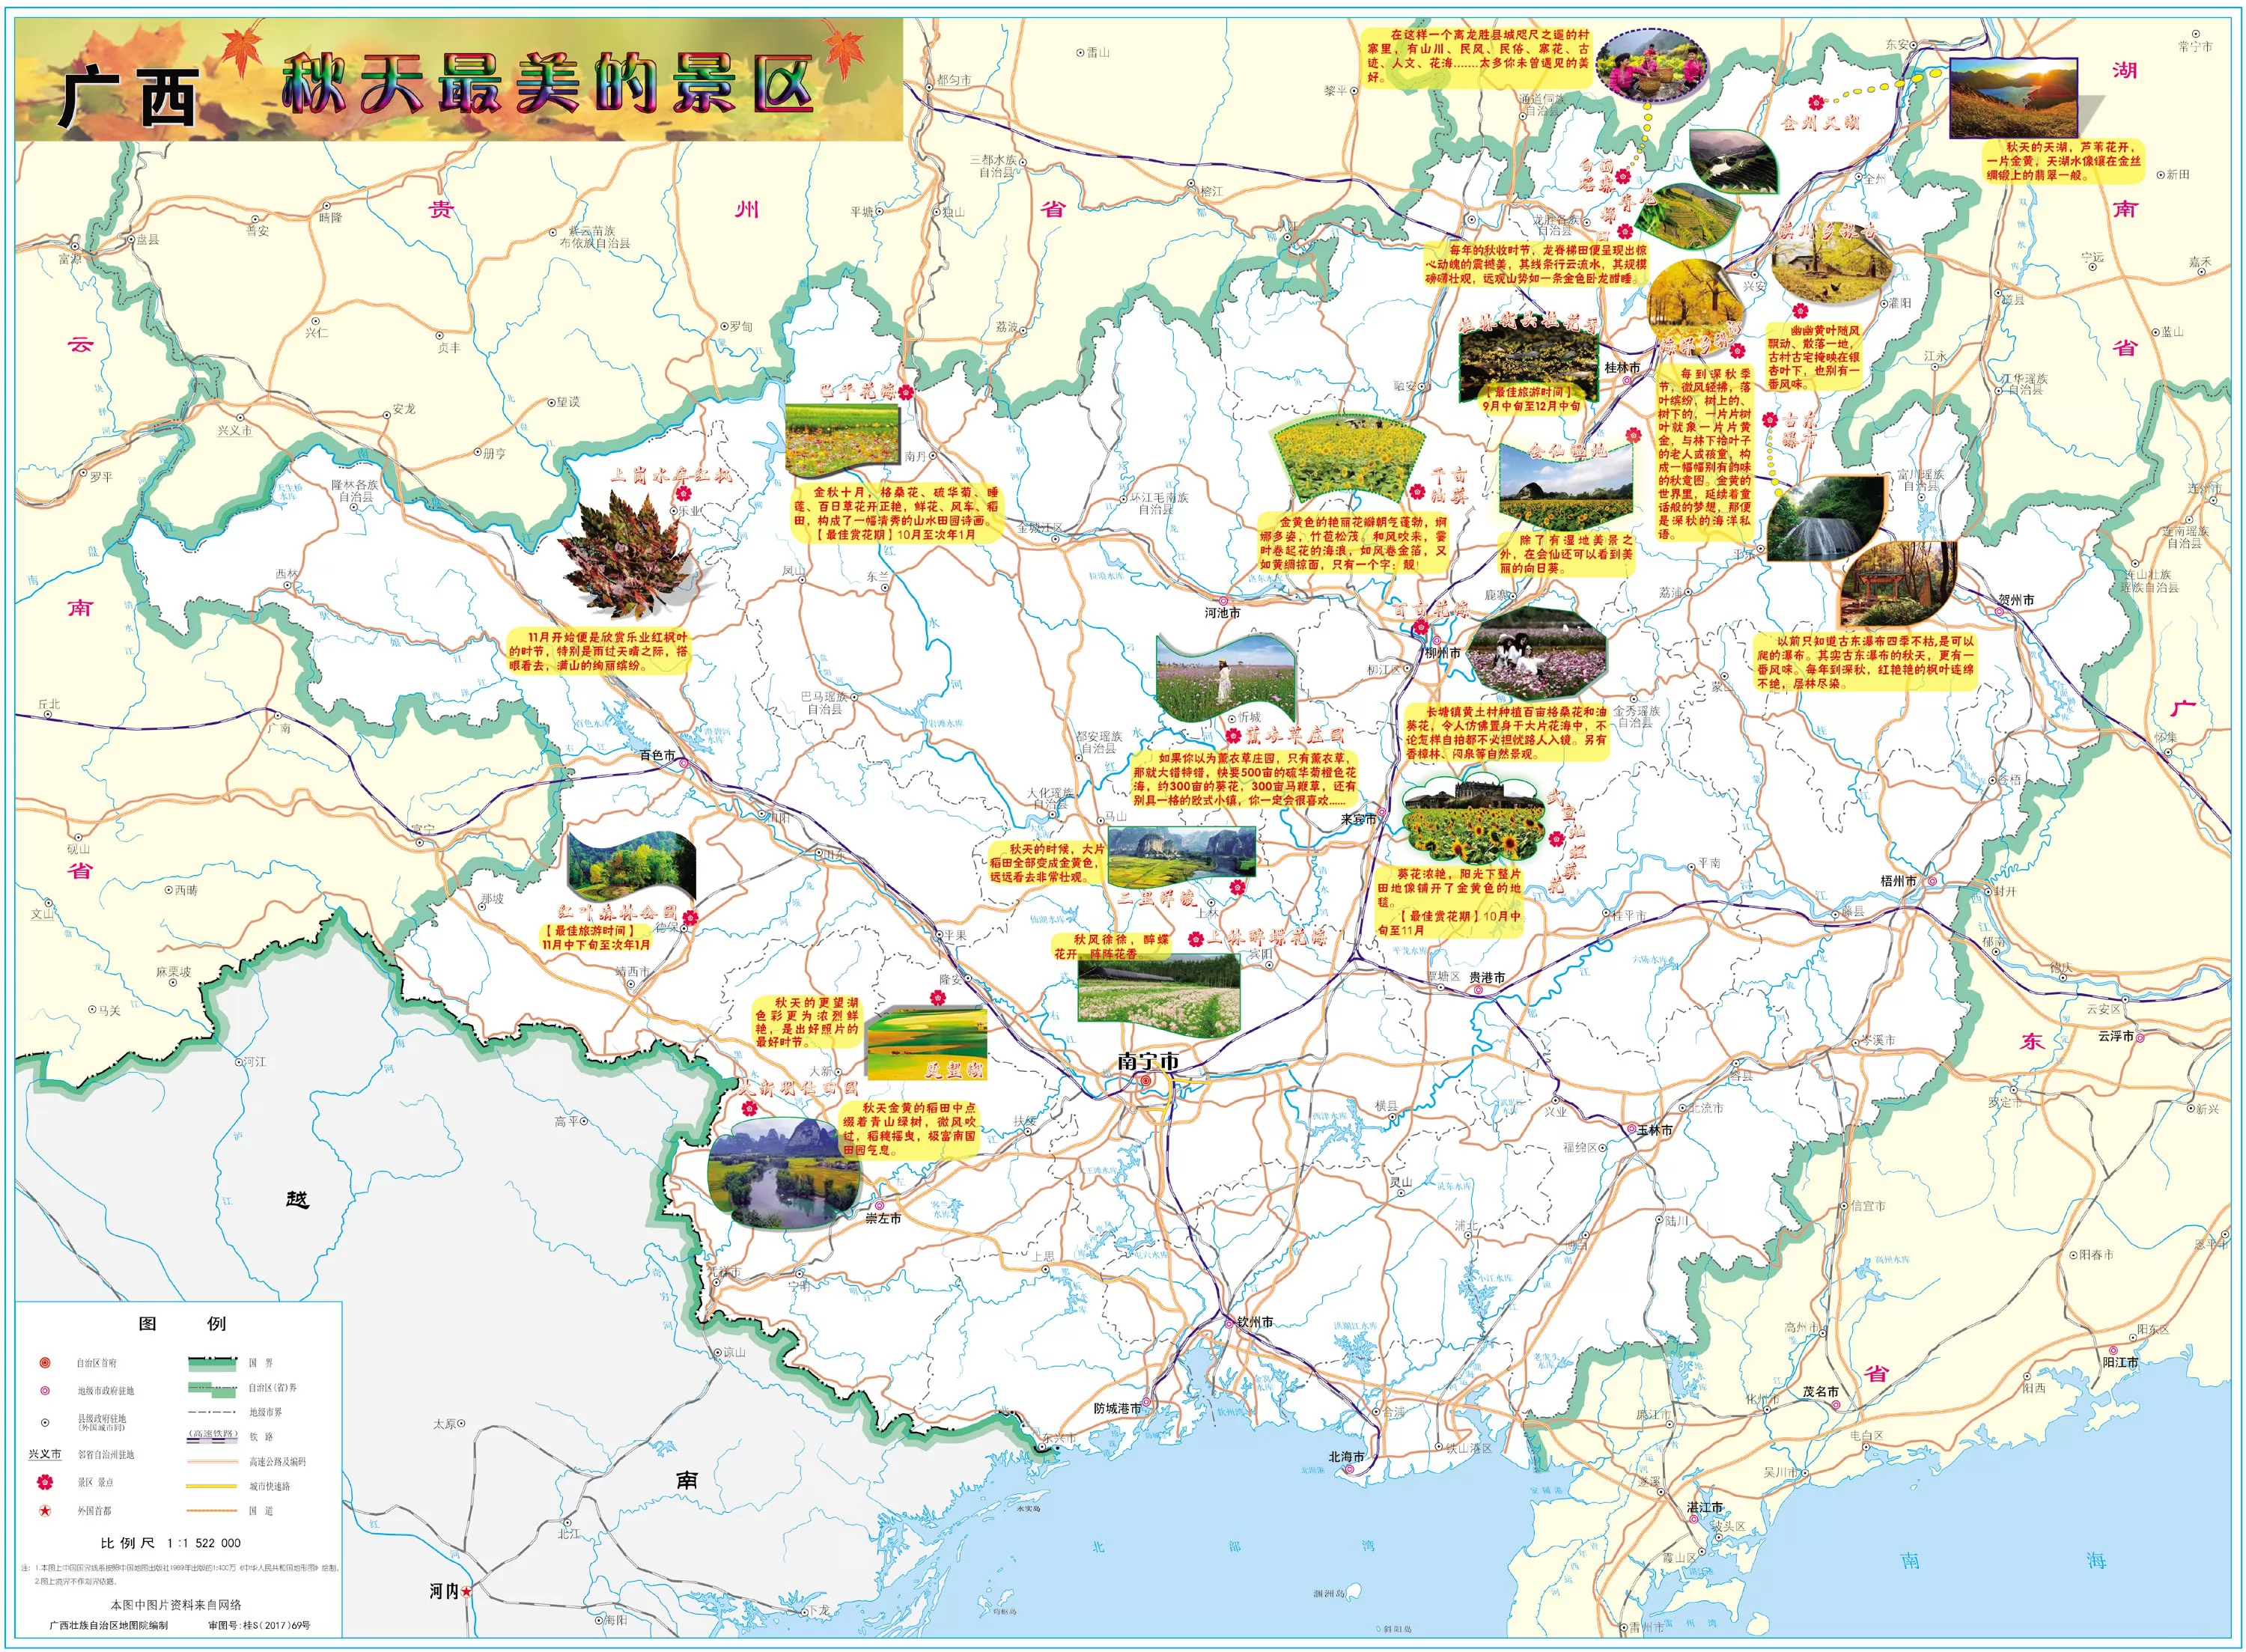 广西最美景区游觅线路图 - 广西地图 - 地理教师网